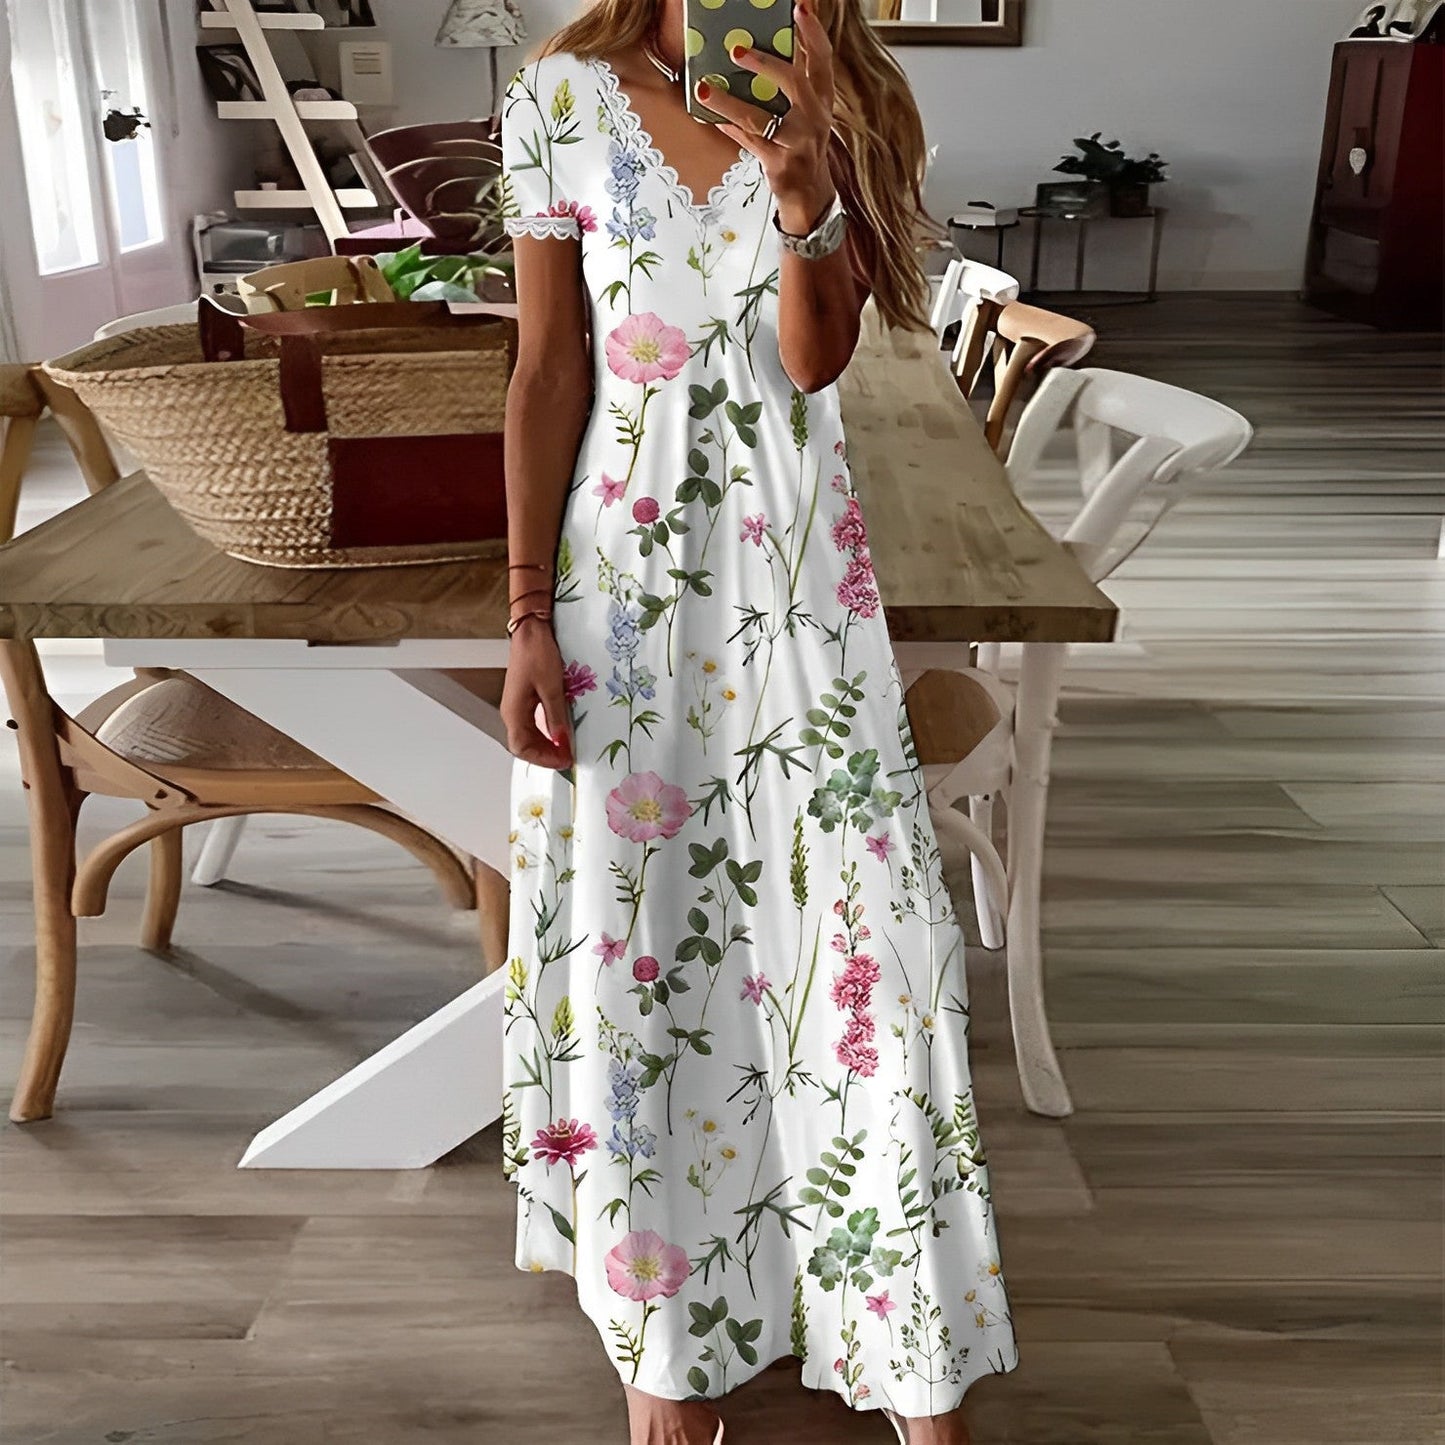 Lucia Comér® - Elegant stylish floral dress